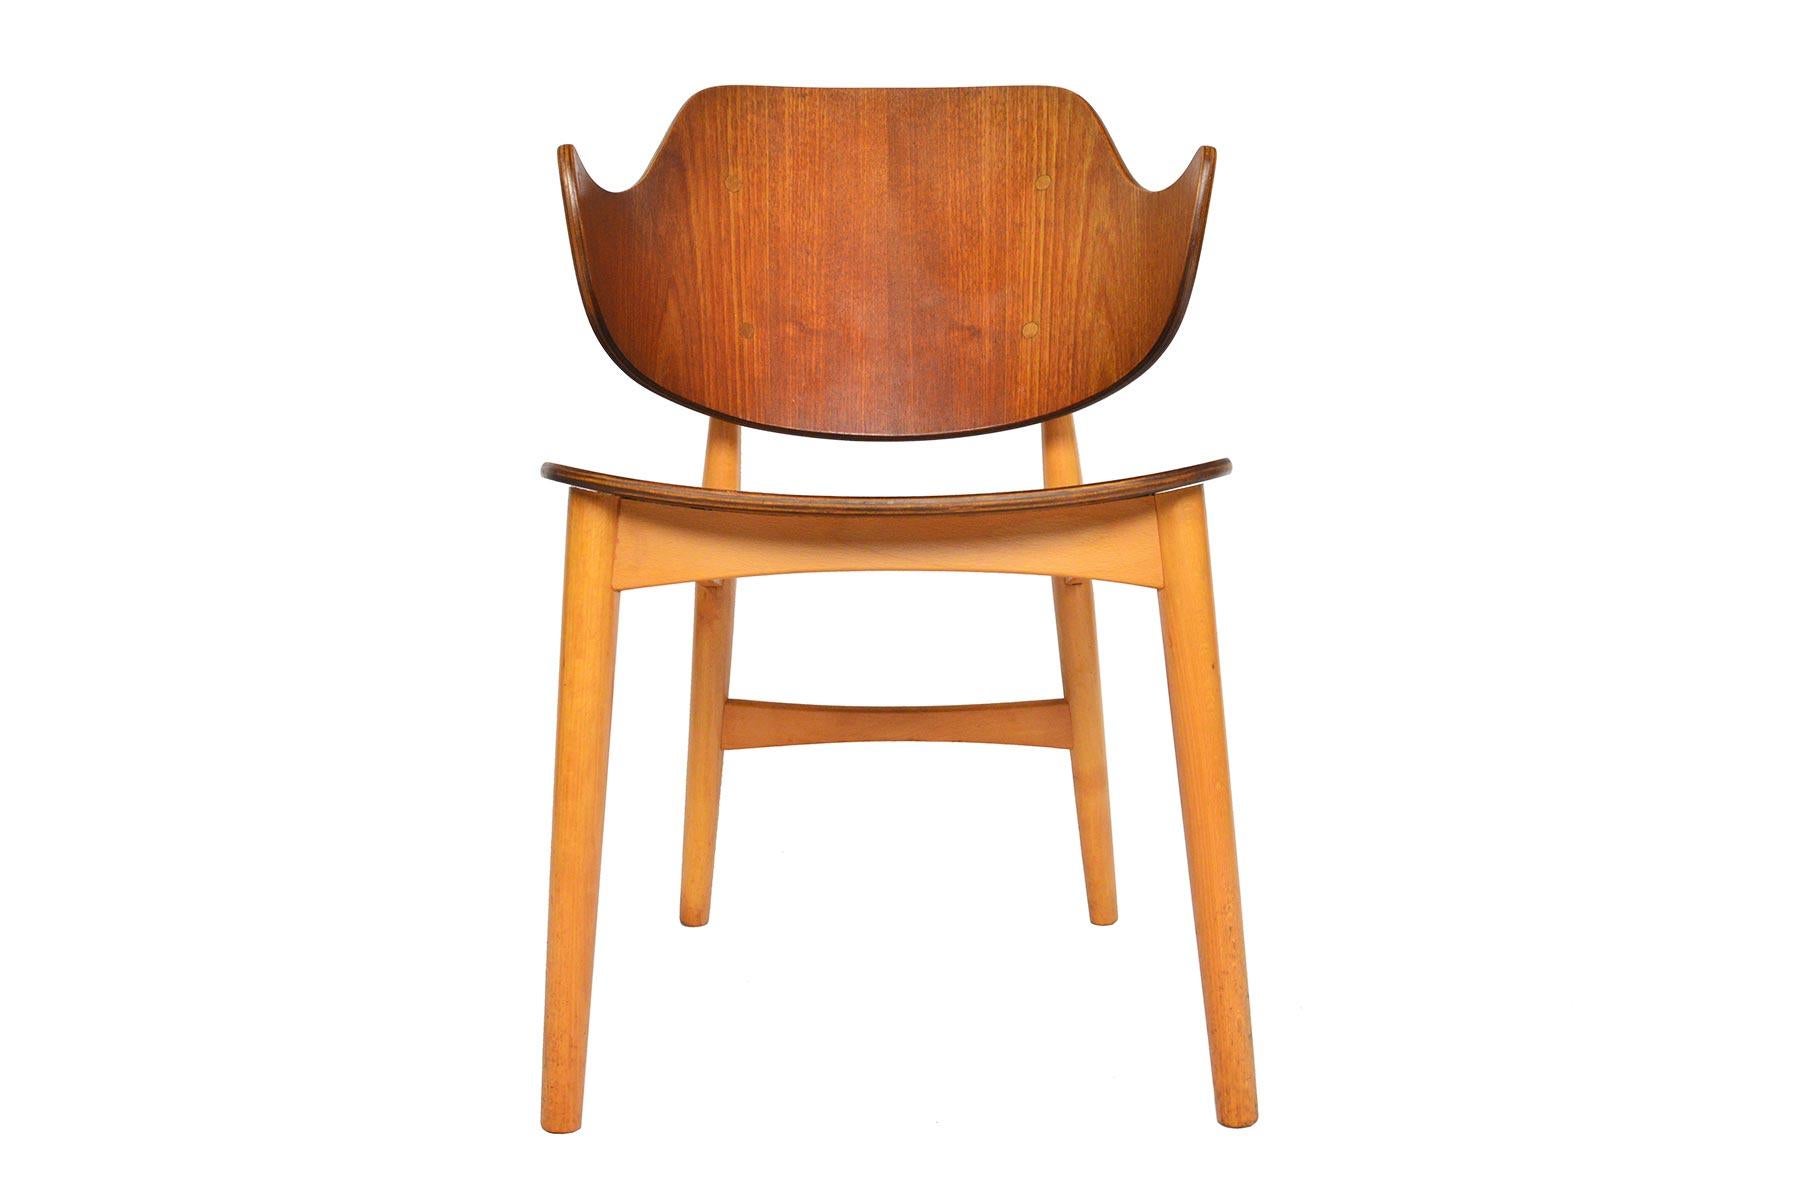 Contemporary Jens Hjorth Teak + Oak Model 307 Side Chair